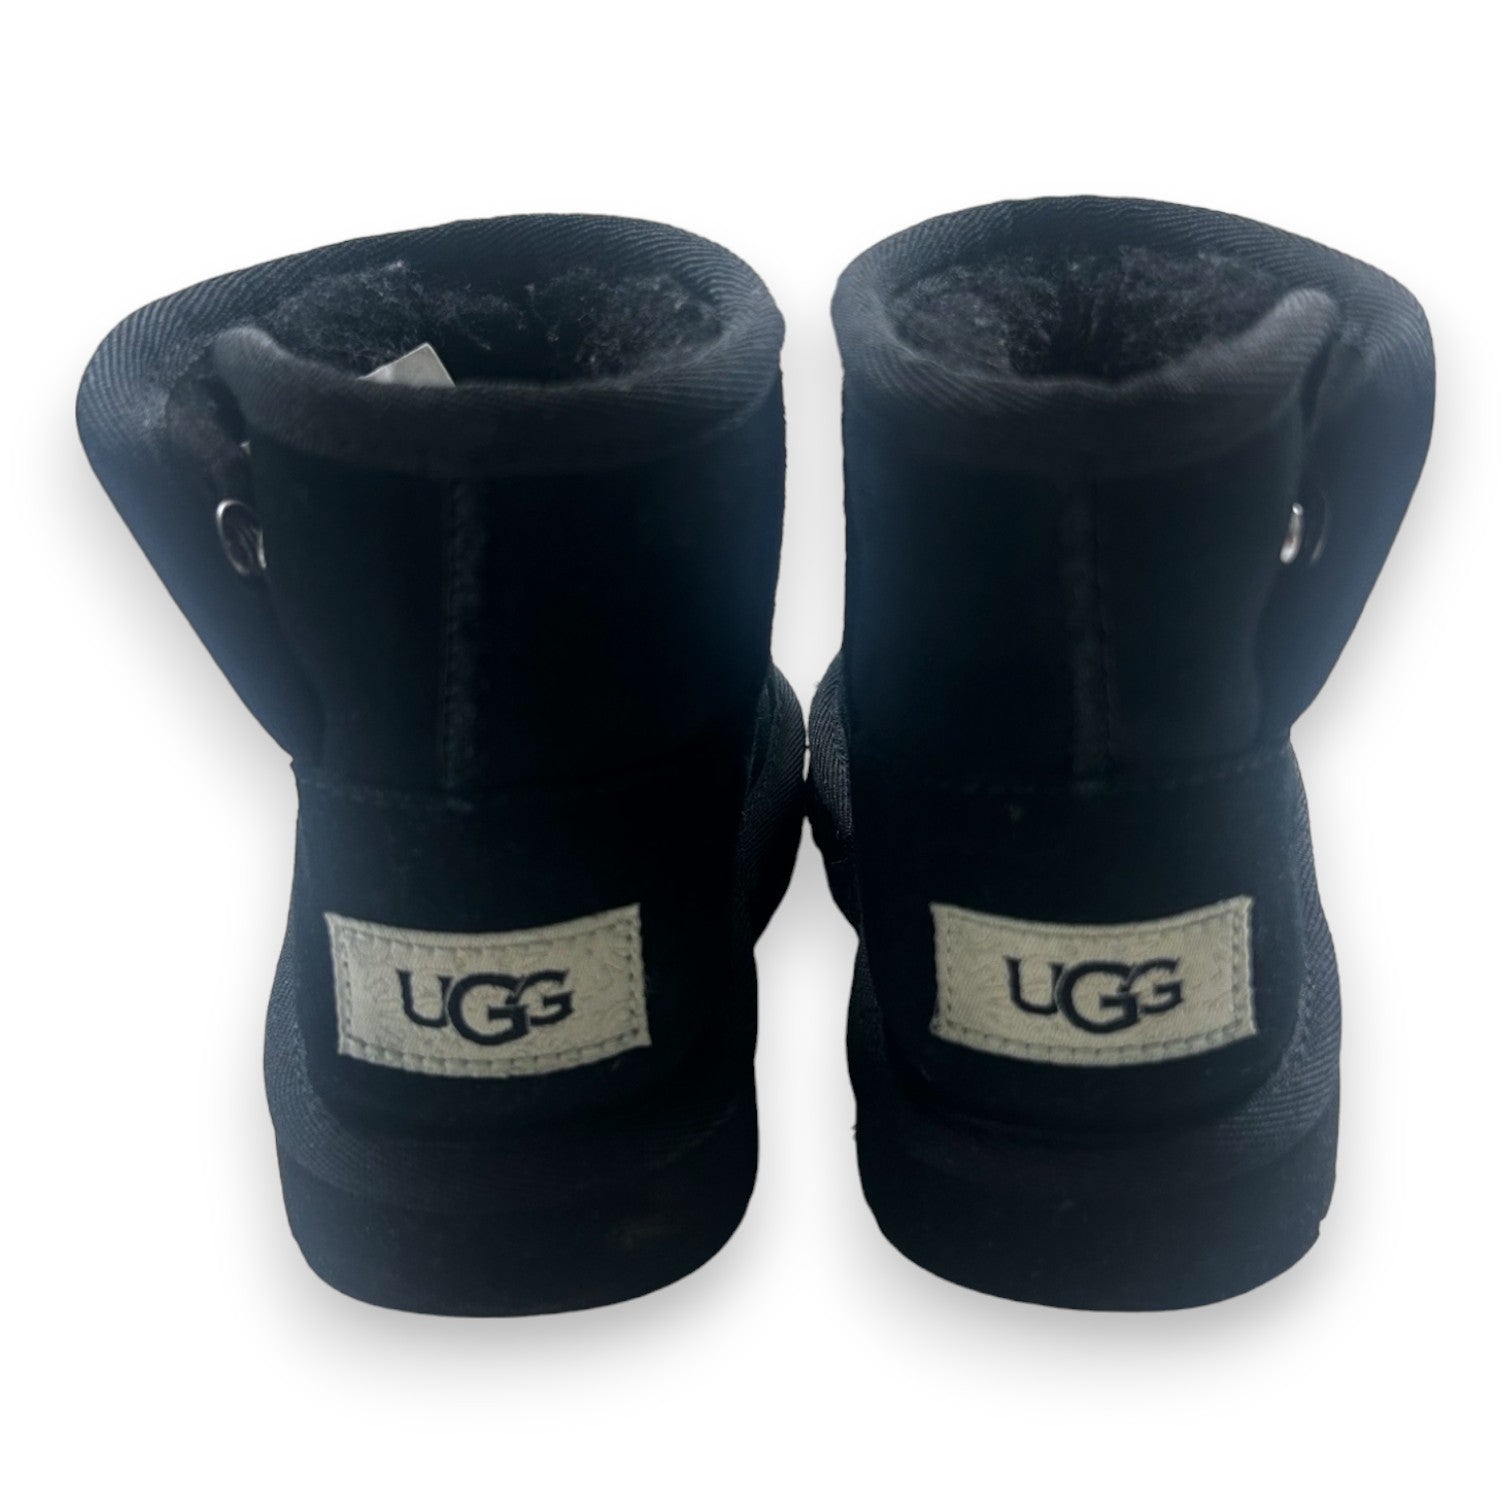 UGG - Bottes noires - 25